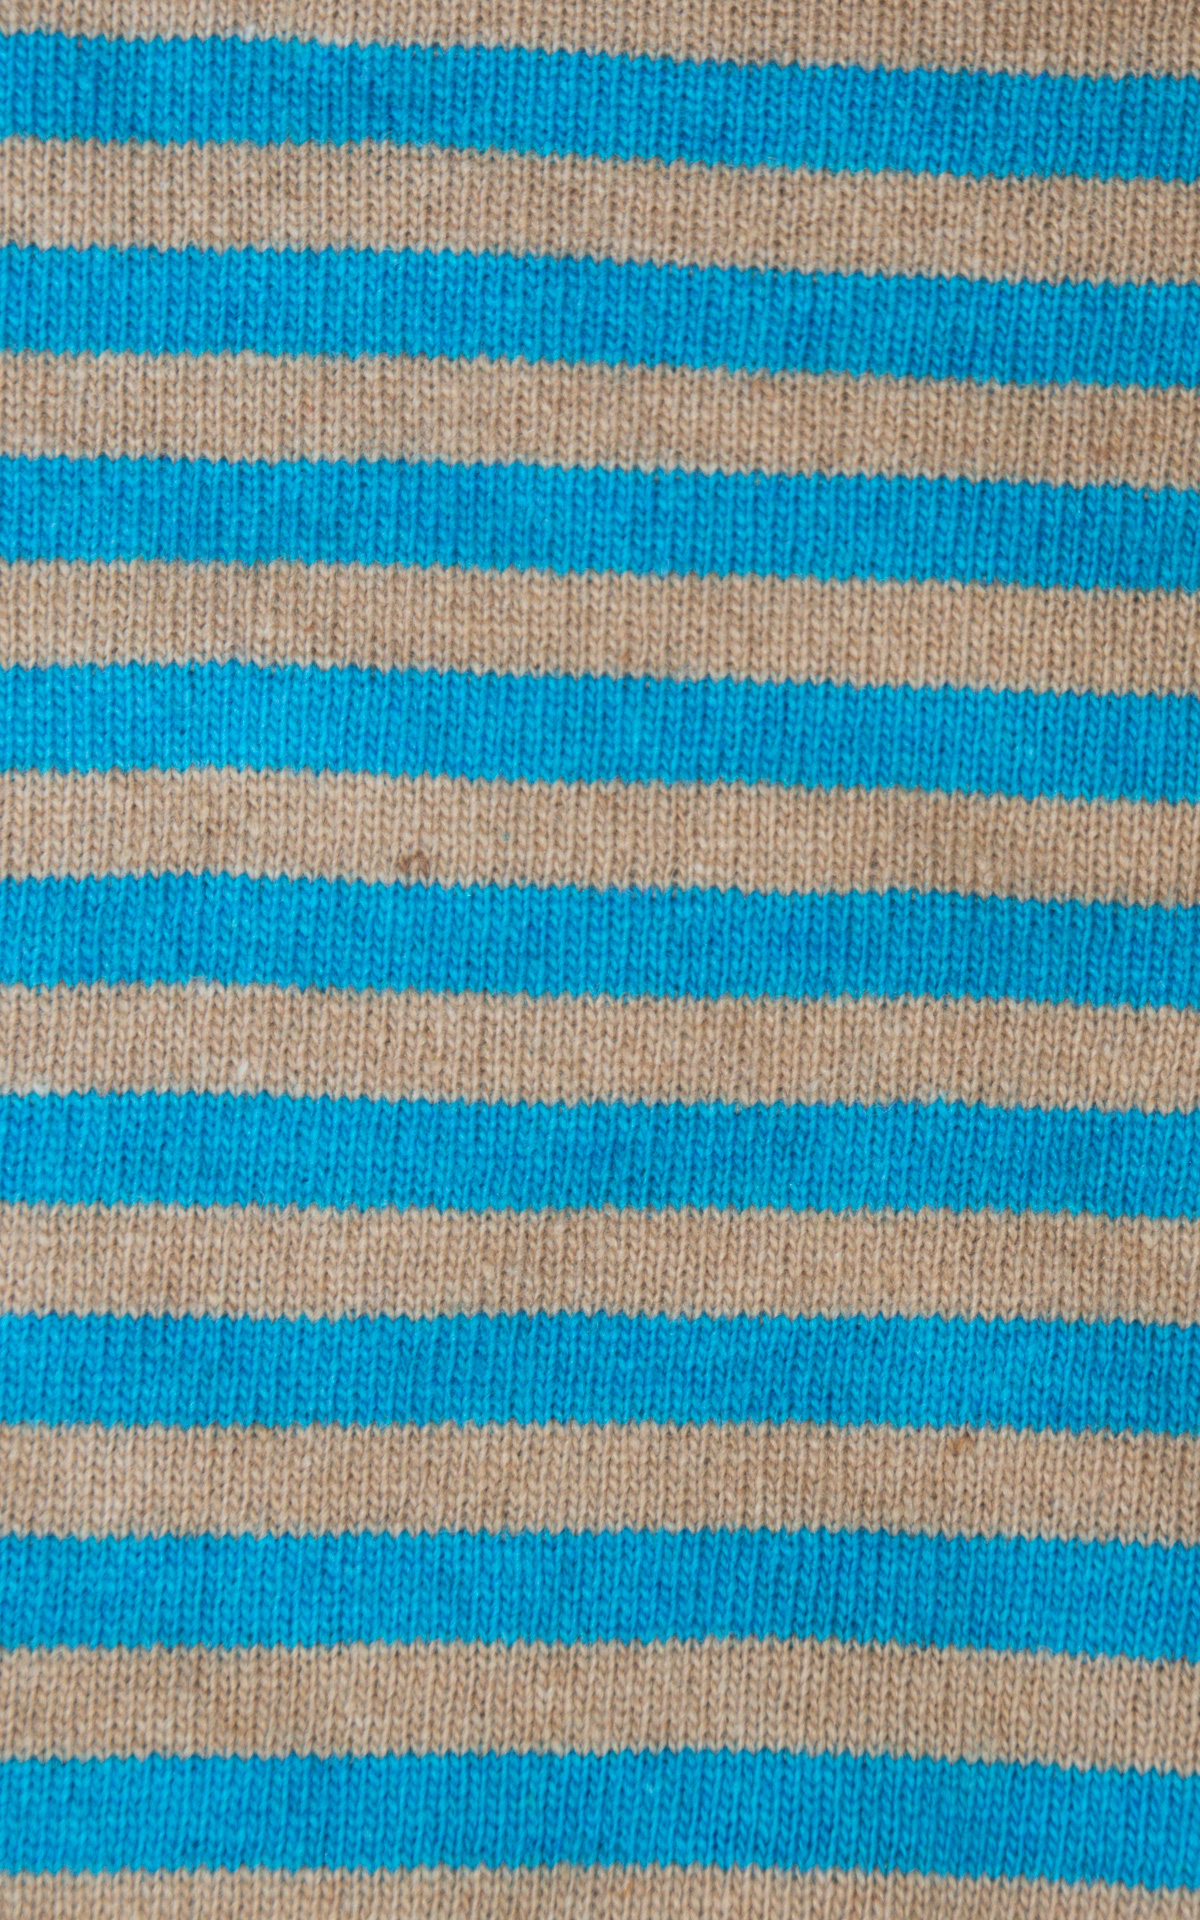 Off-On - maglia bicolore righe - azzurro/camel